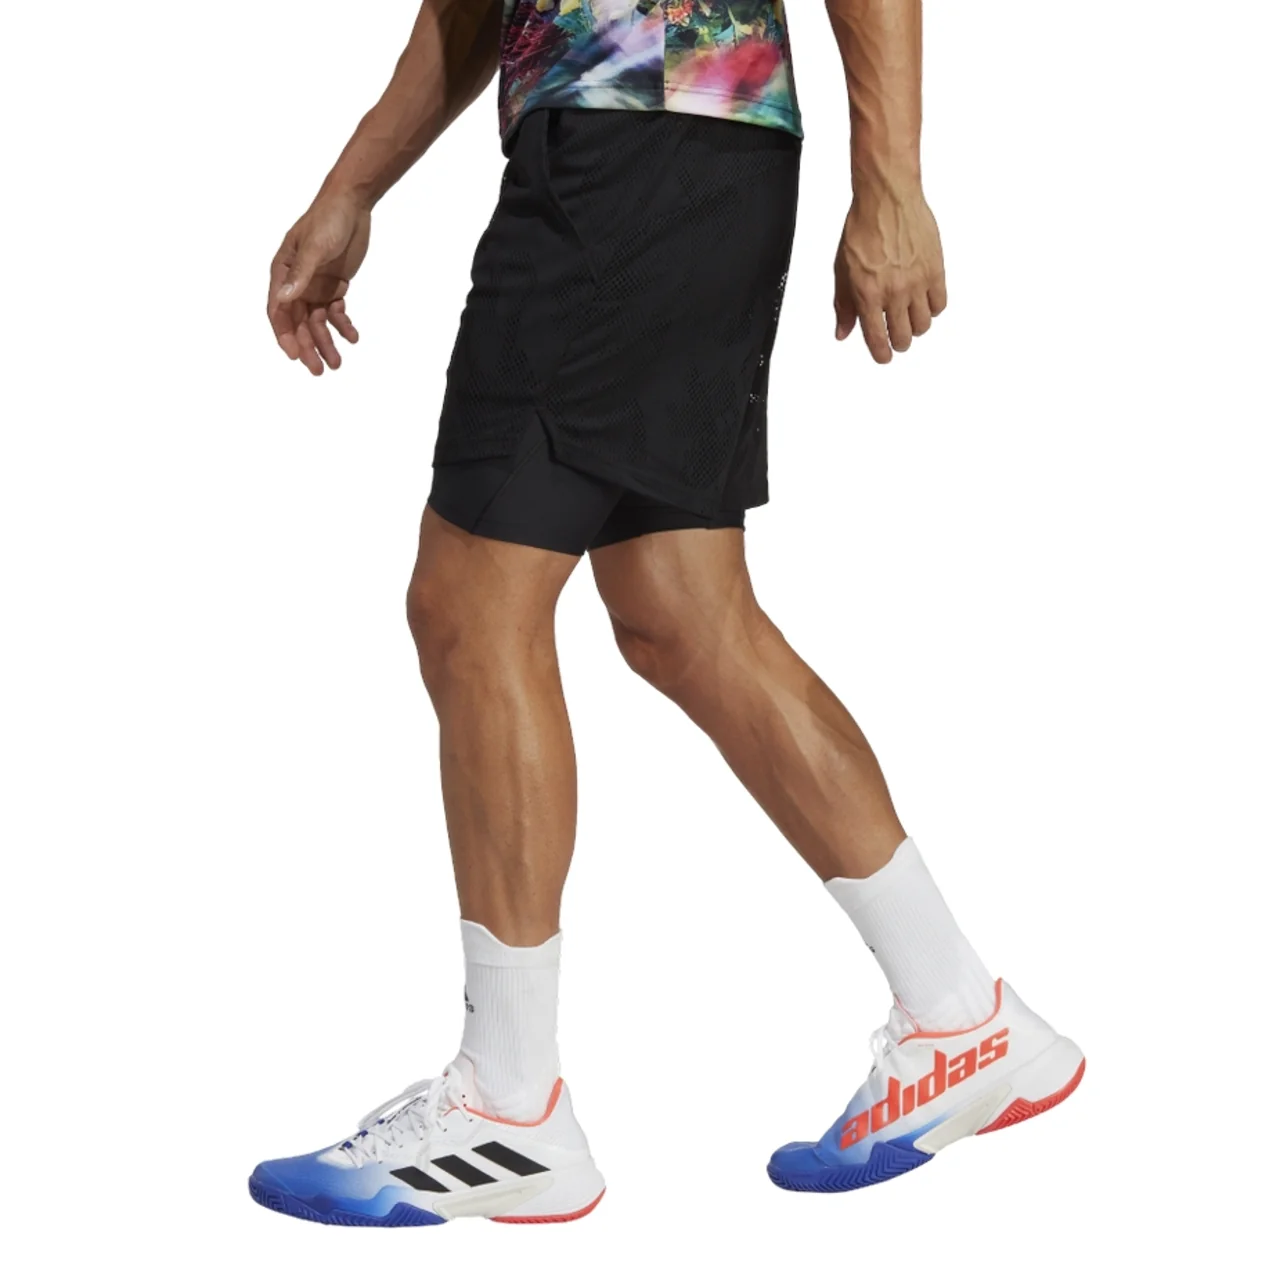 Adidas Melbourne Ergo Printed Shorts 7 Men Black